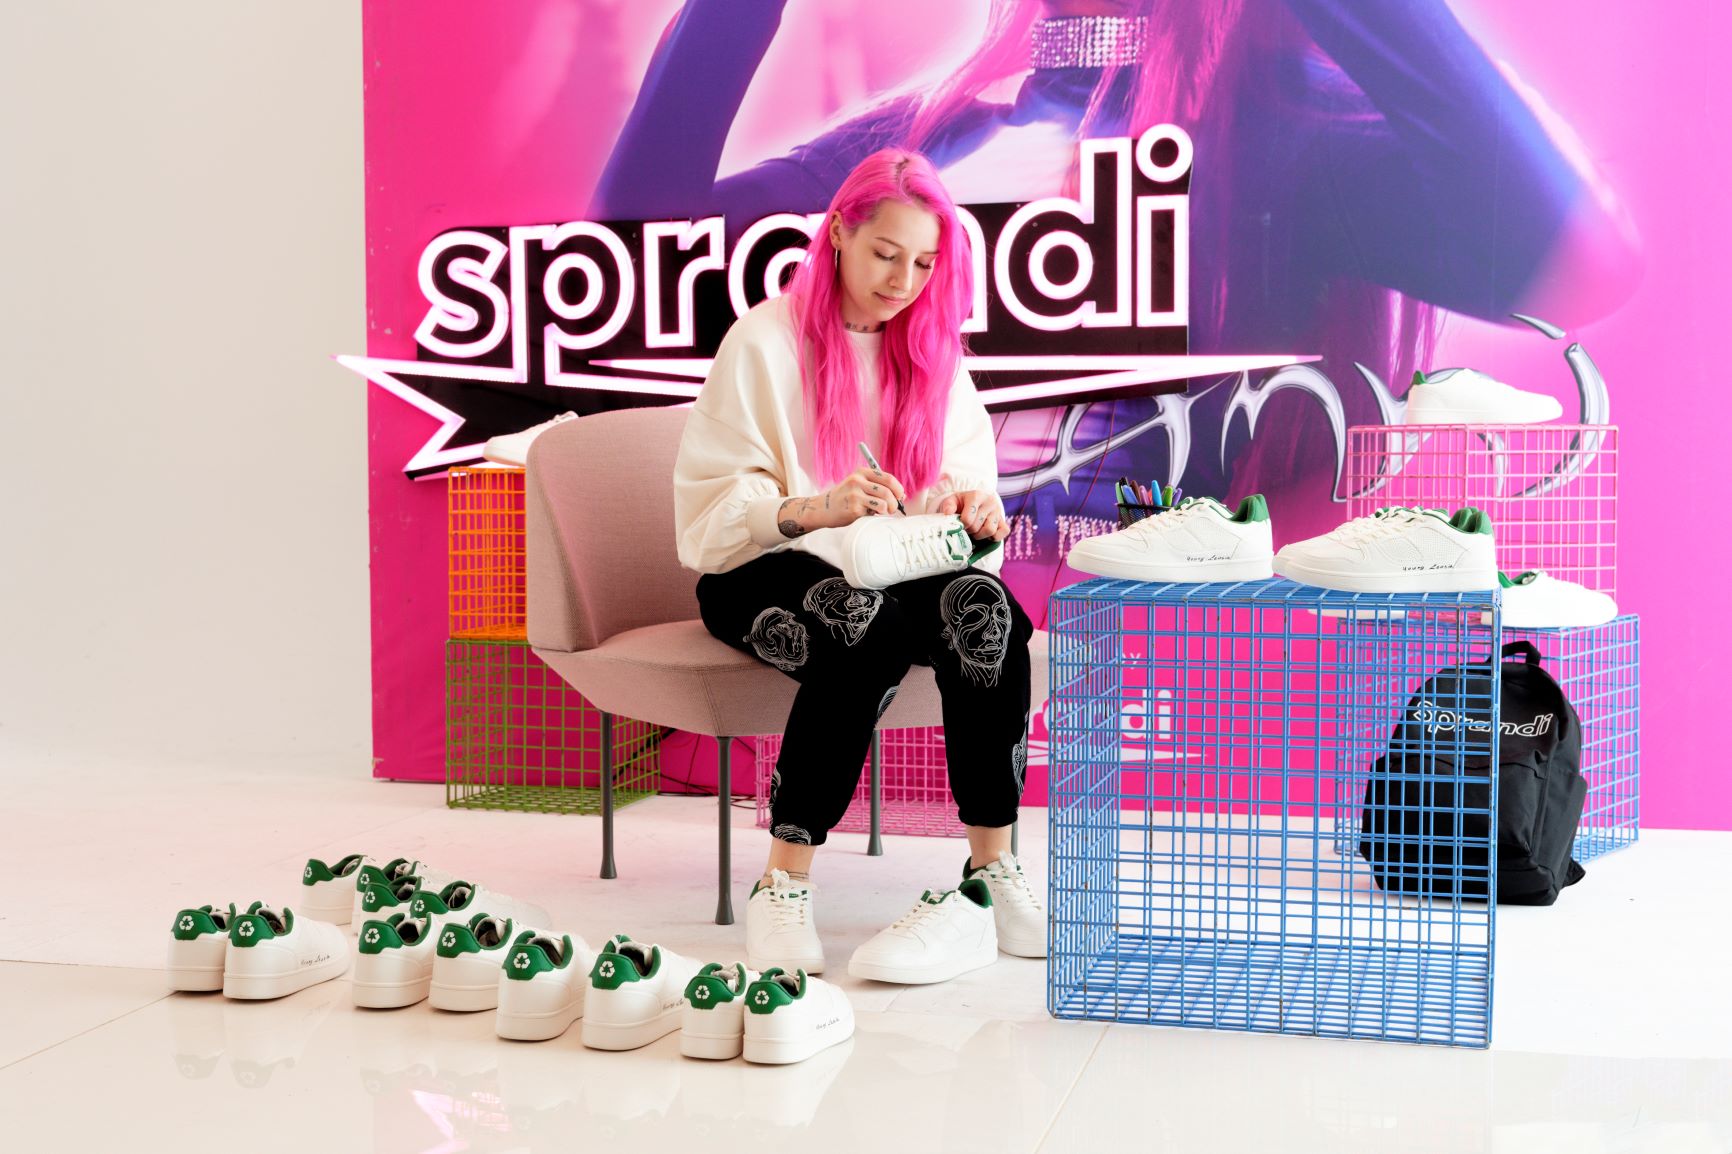 Young Leosia i Sprandi z zawrotną ceną za charytatywny model butów!